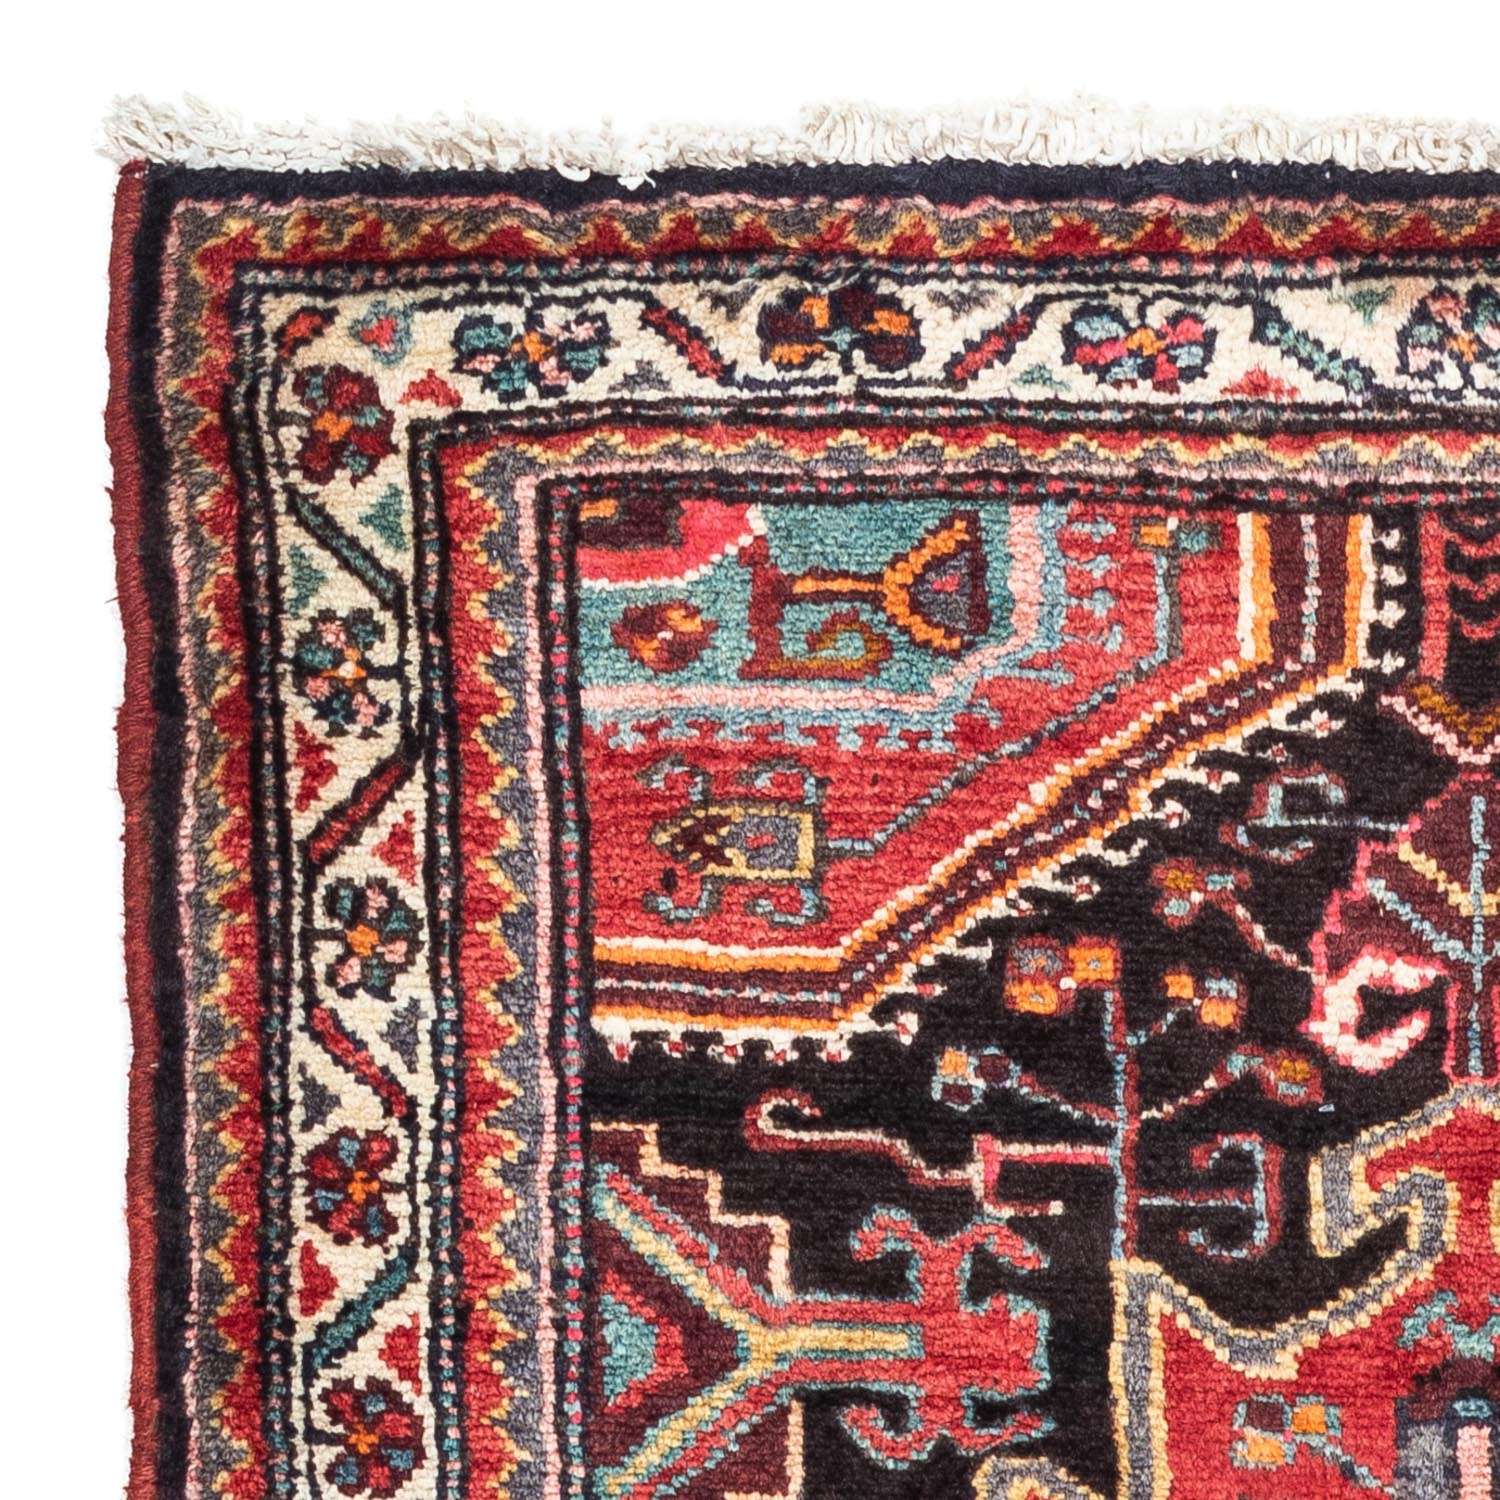 Persisk teppe - Nomadisk - 130 x 90 cm - rød